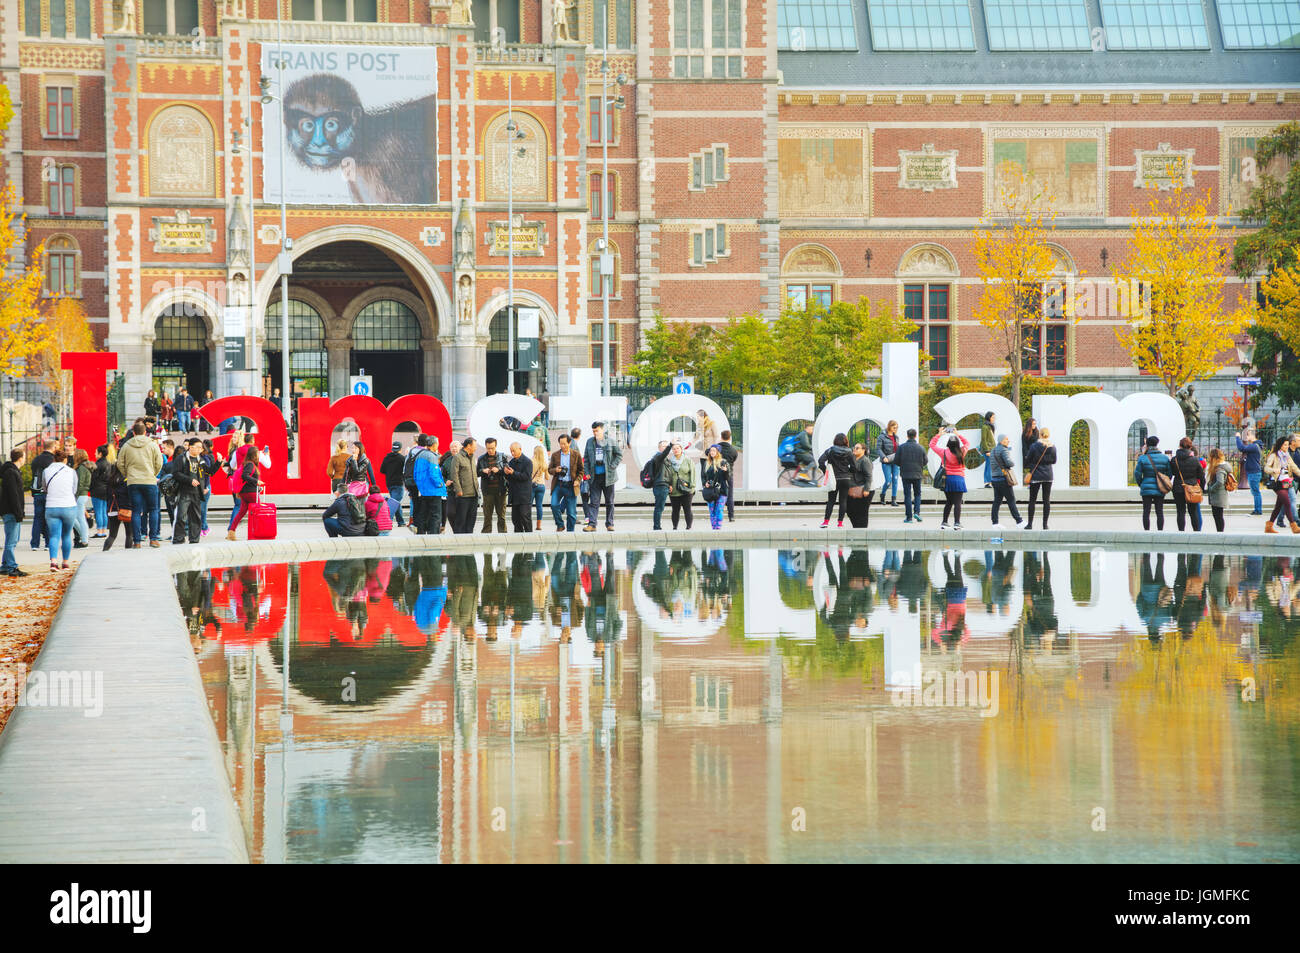 AMSTERDAM - 30 Oktober: Ich Amsterdam Slogan auf 30. Oktober 2016 in Amsterdam, Niederlande. Auf der Rückseite des Rijksmuseums am Museumplein, der s Stockfoto